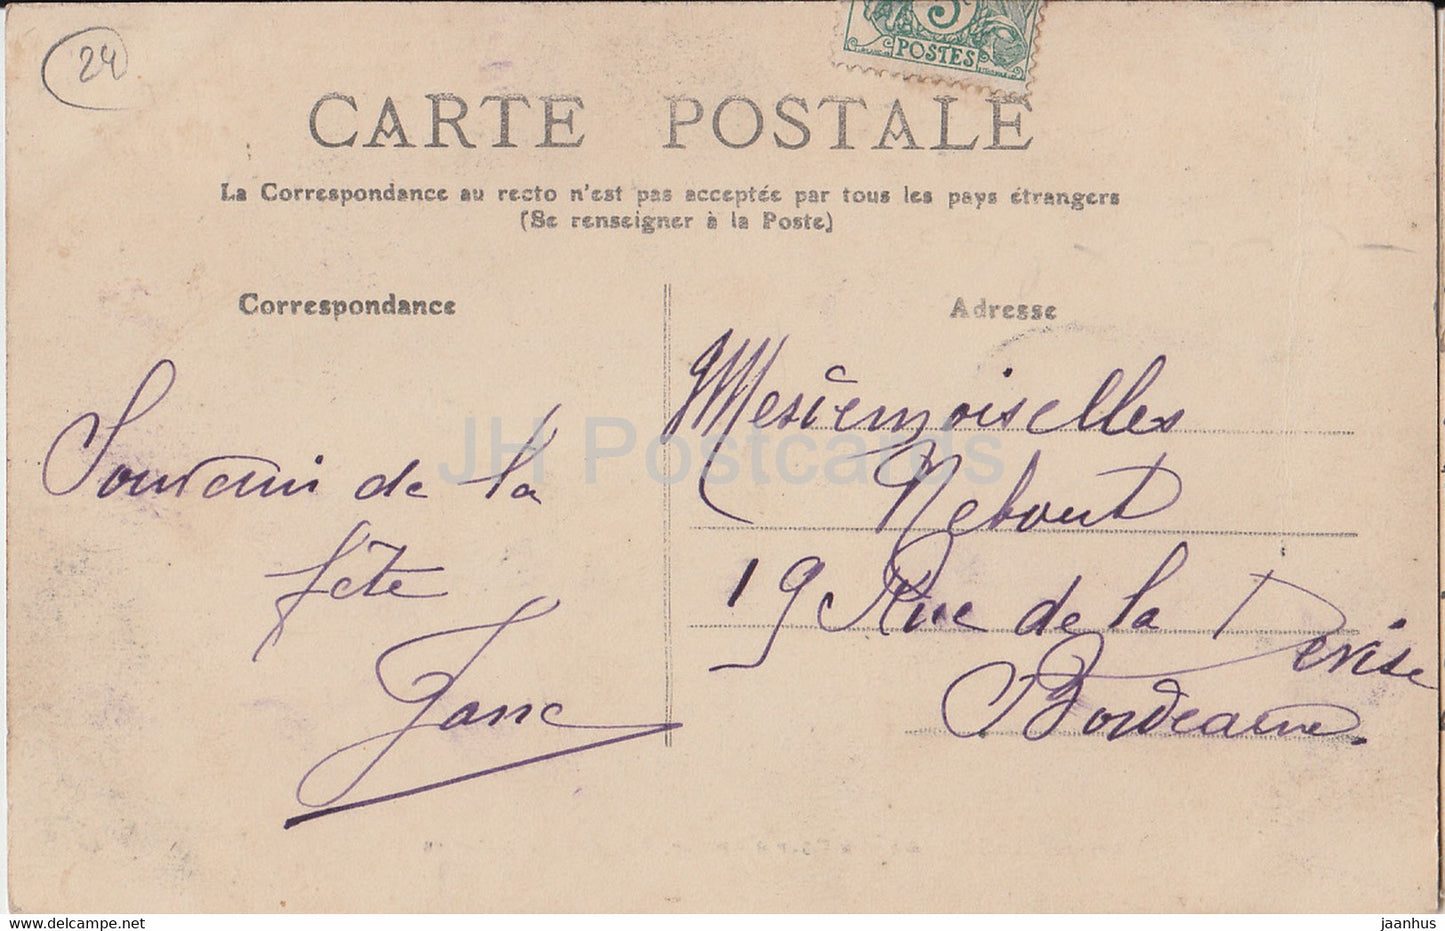 Chancelade - La Cour d'Amour - Vue des Spectateurs - 43 - old postcard - 1907 - France - used